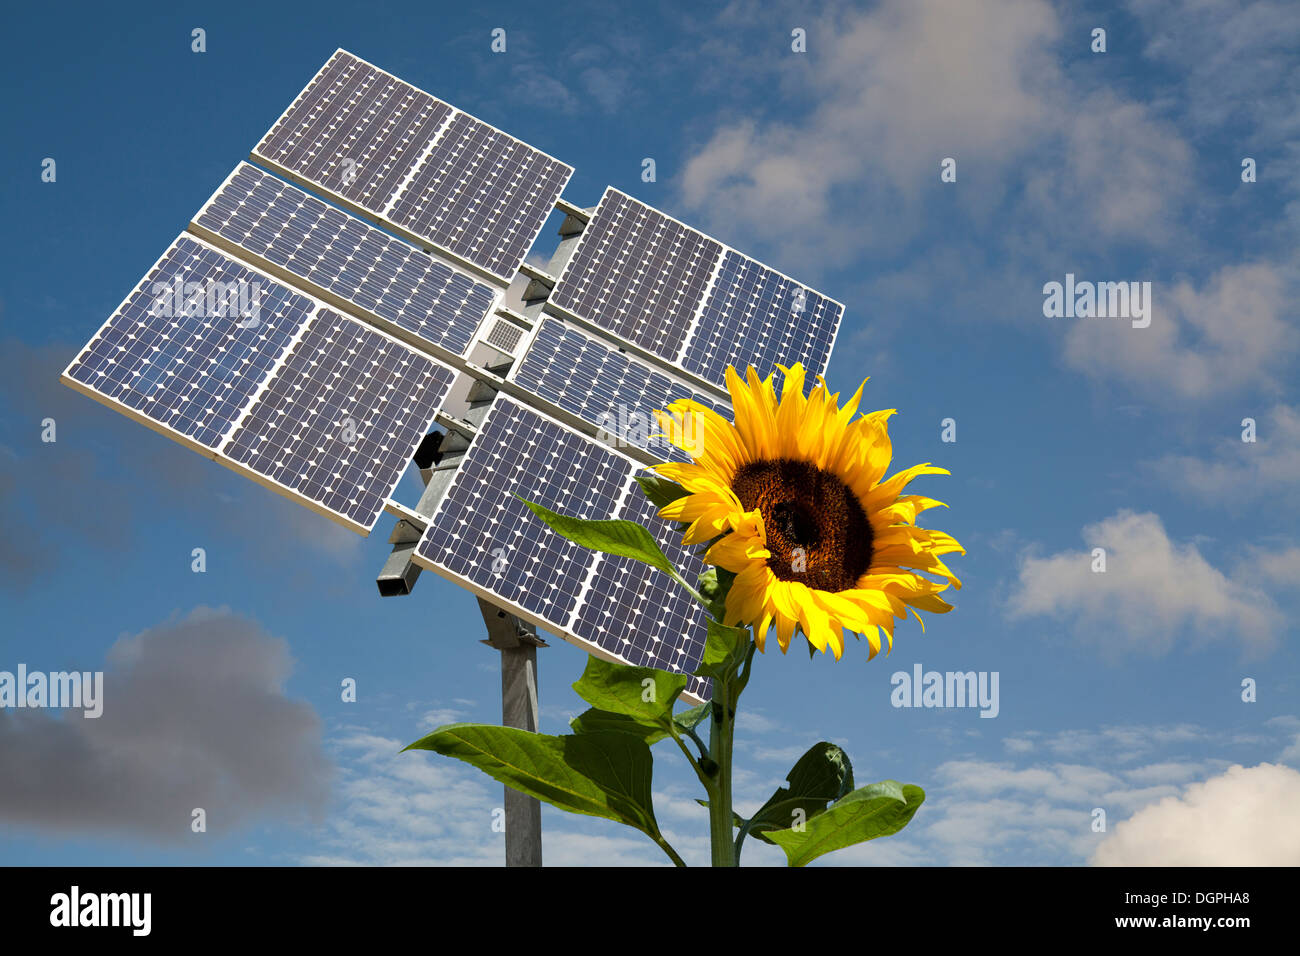 Des panneaux solaires à l'image d'un tournesol s'orientent